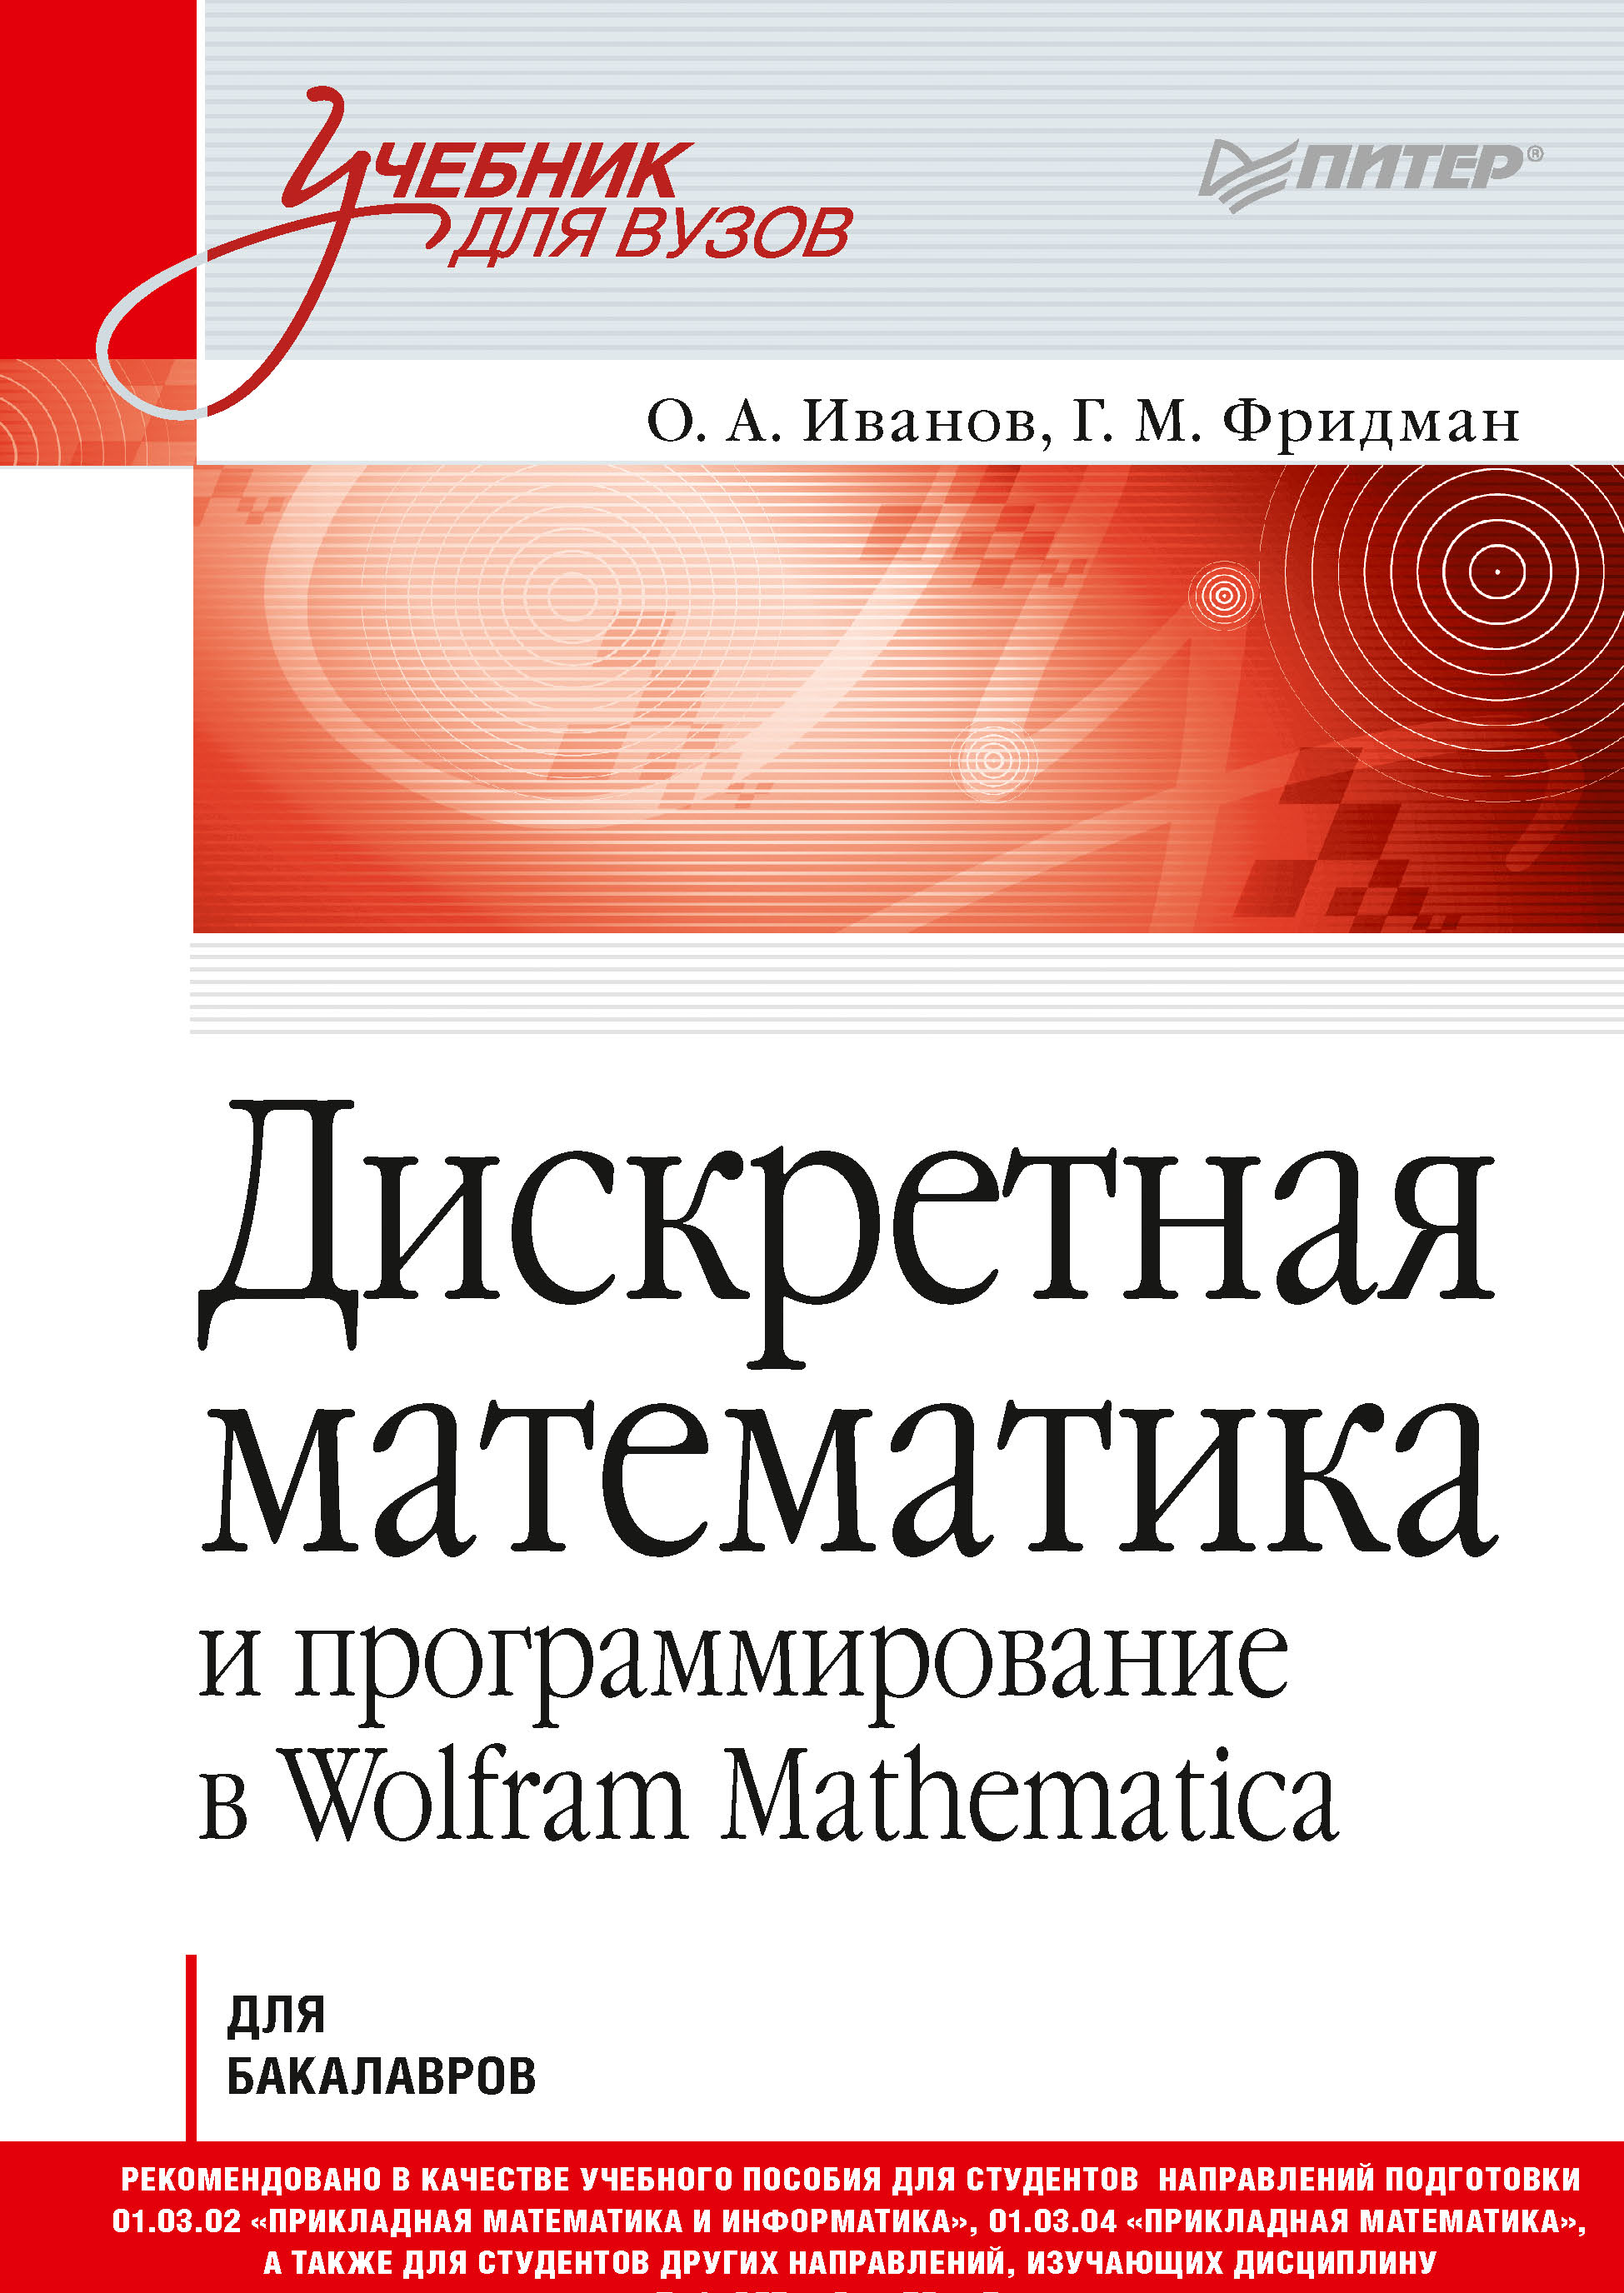 Книга Учебник для вузов (Питер) Дискретная математика и программирование в Wolfram Mathematica созданная О. А. Иванов, Г. М. Фридман может относится к жанру информатика и вычислительная техника, математика, программирование, программы, учебники и пособия для вузов. Стоимость электронной книги Дискретная математика и программирование в Wolfram Mathematica с идентификатором 40243527 составляет 719.00 руб.